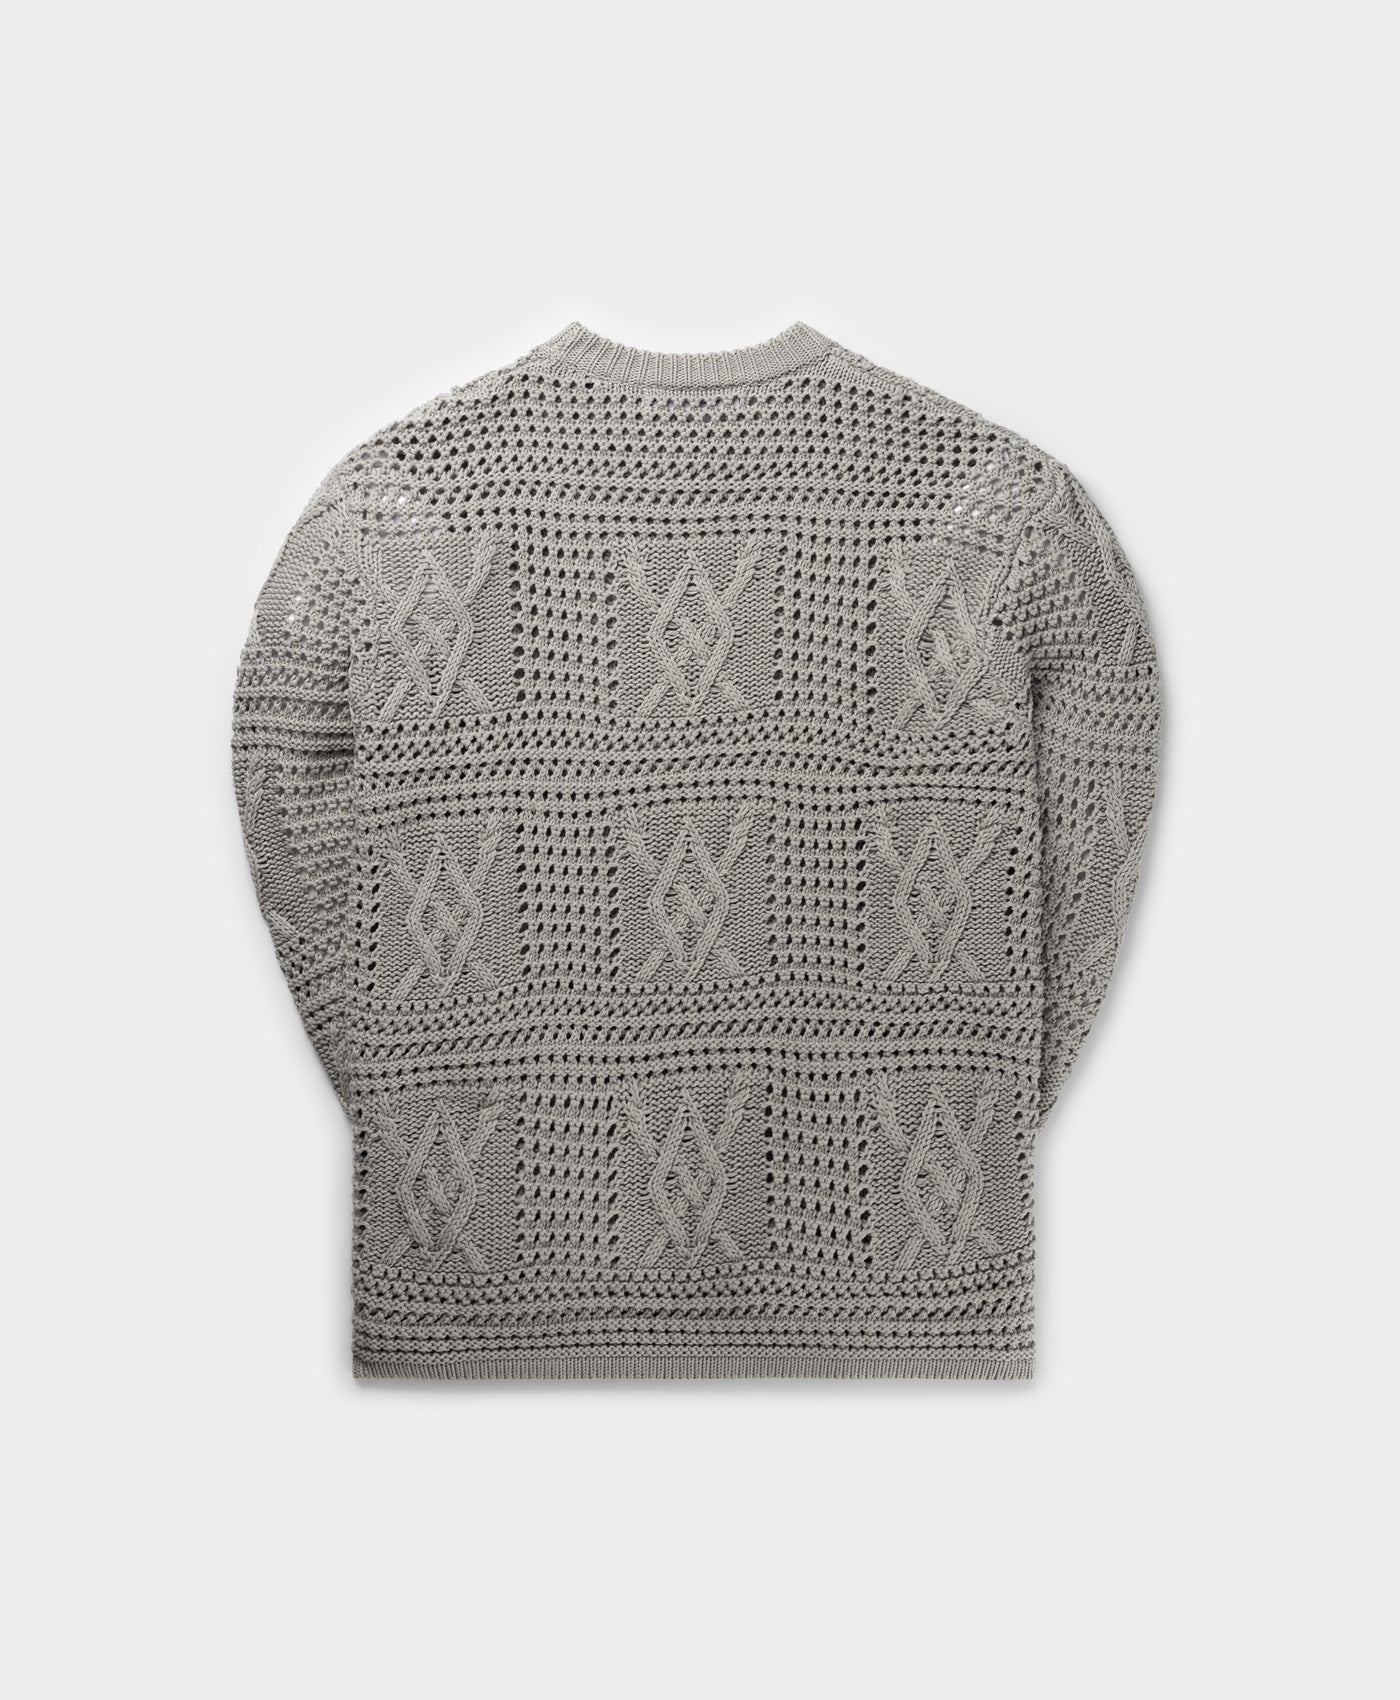 DP - Moonstruck Grey Zuberi Crochet LS - Packshot - Rear